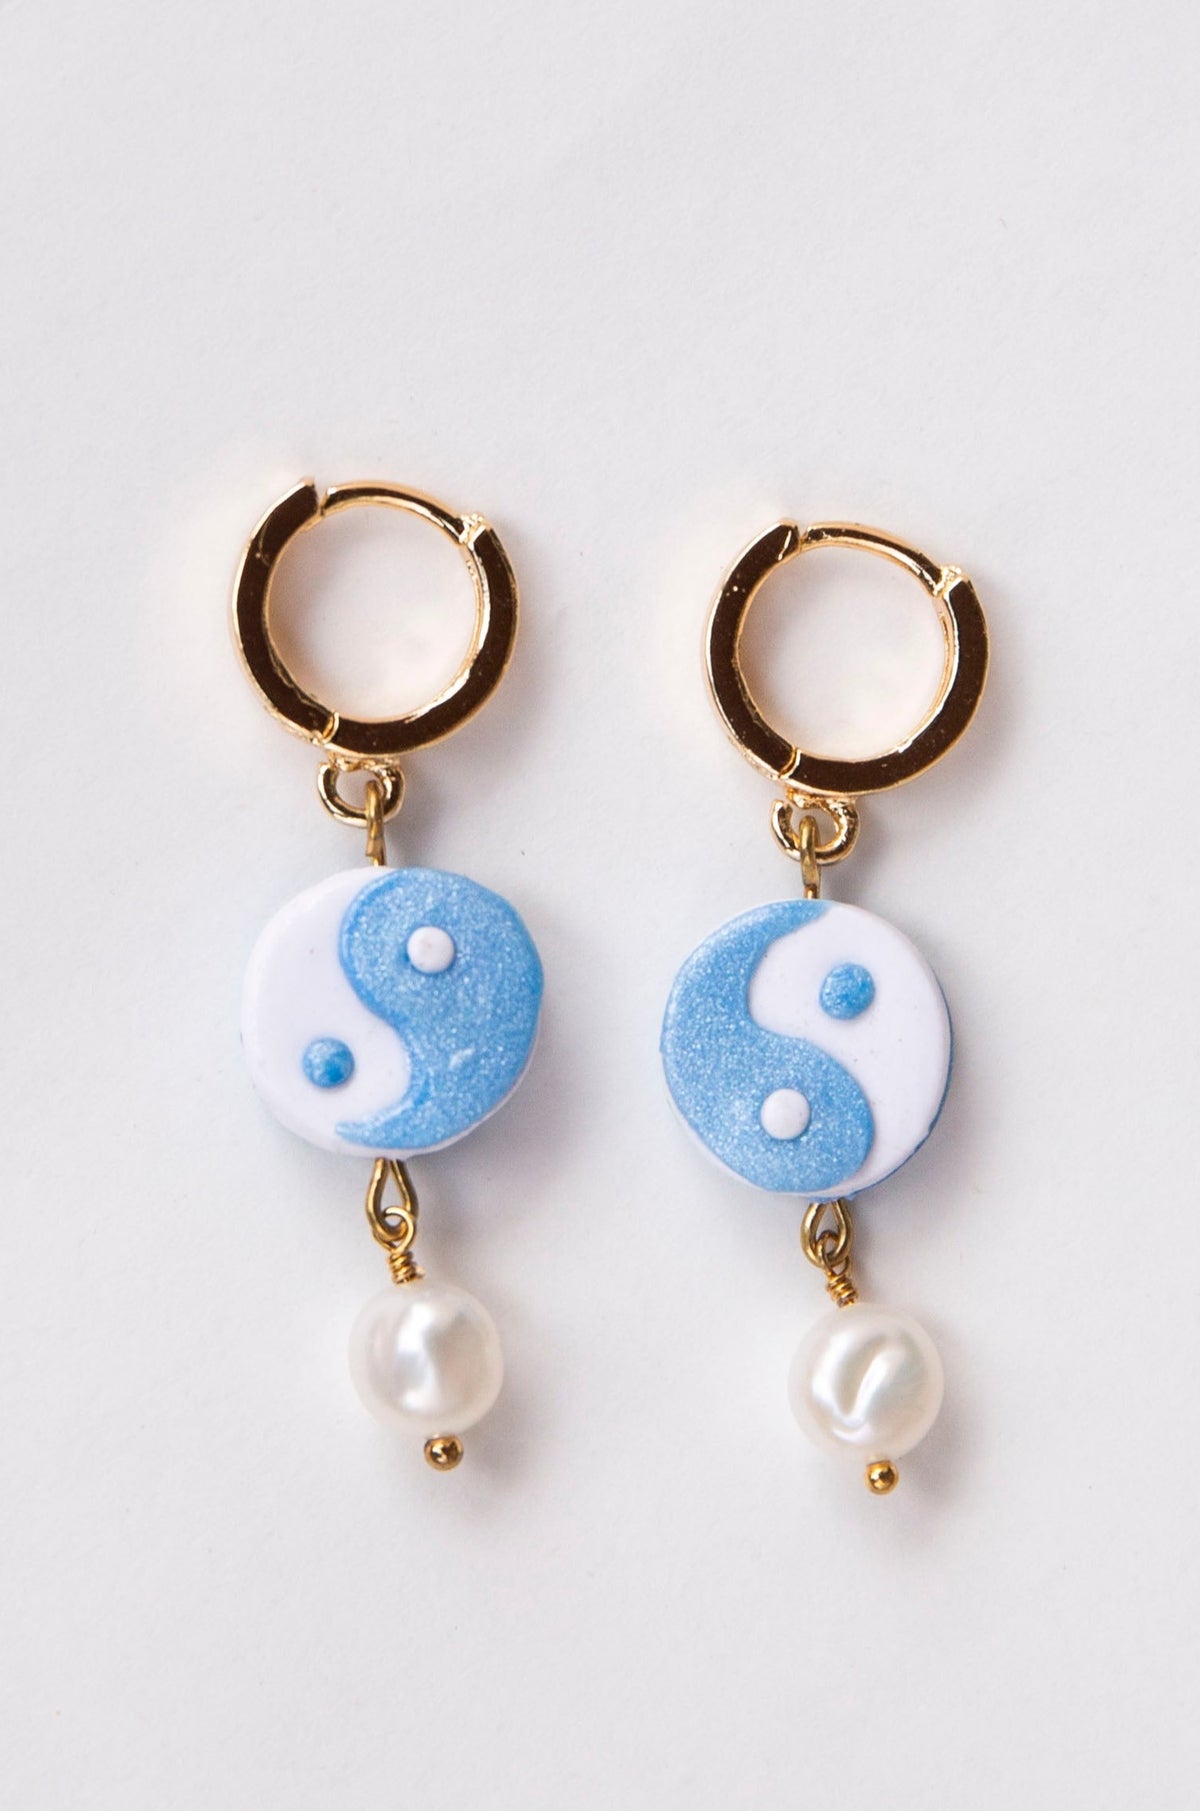 Pearla Earring, Freshwater Pearl & Vermeil Hoop (Baby Blue & White)